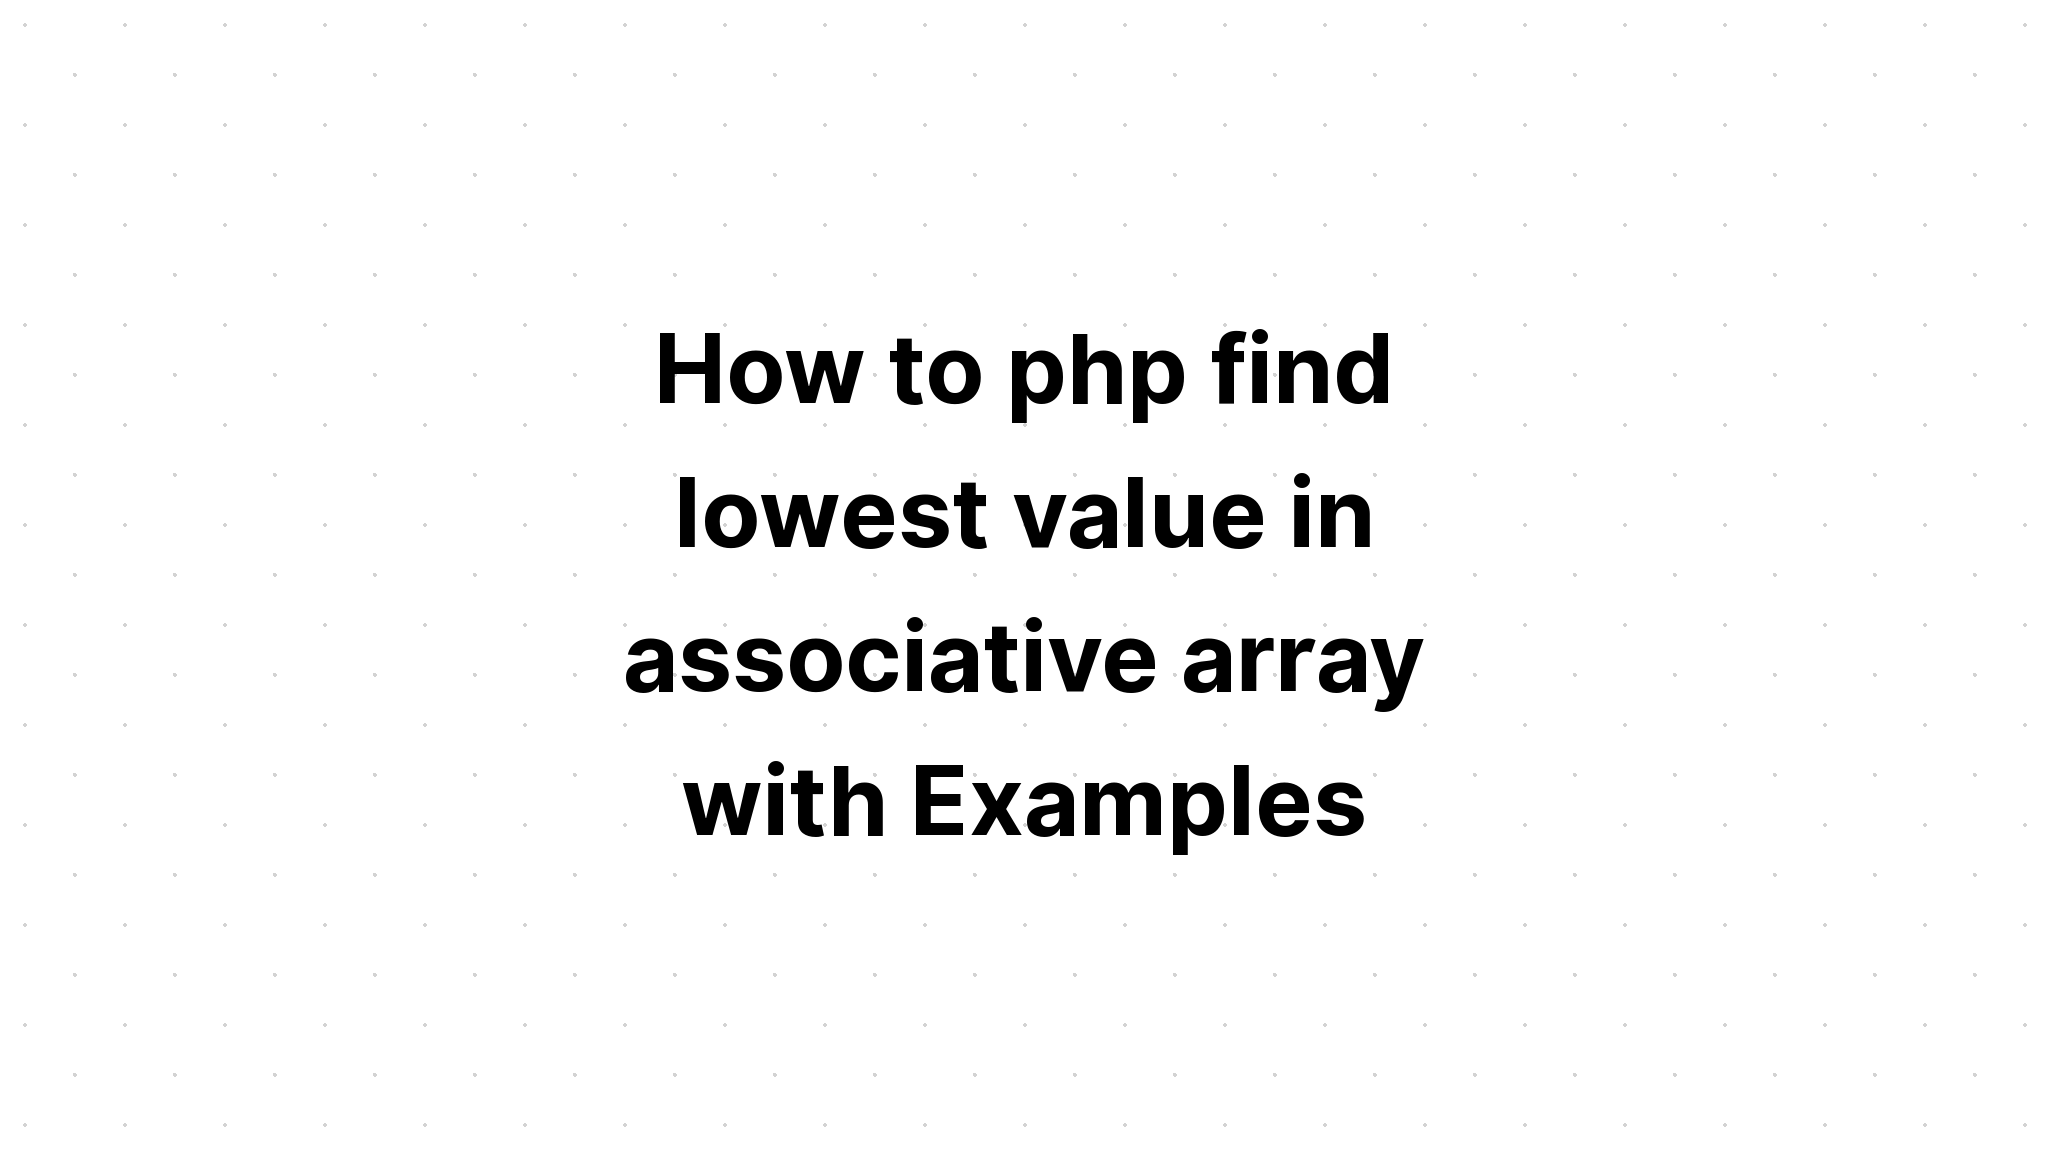 Cara php menemukan nilai terendah dalam array asosiatif dengan Contoh